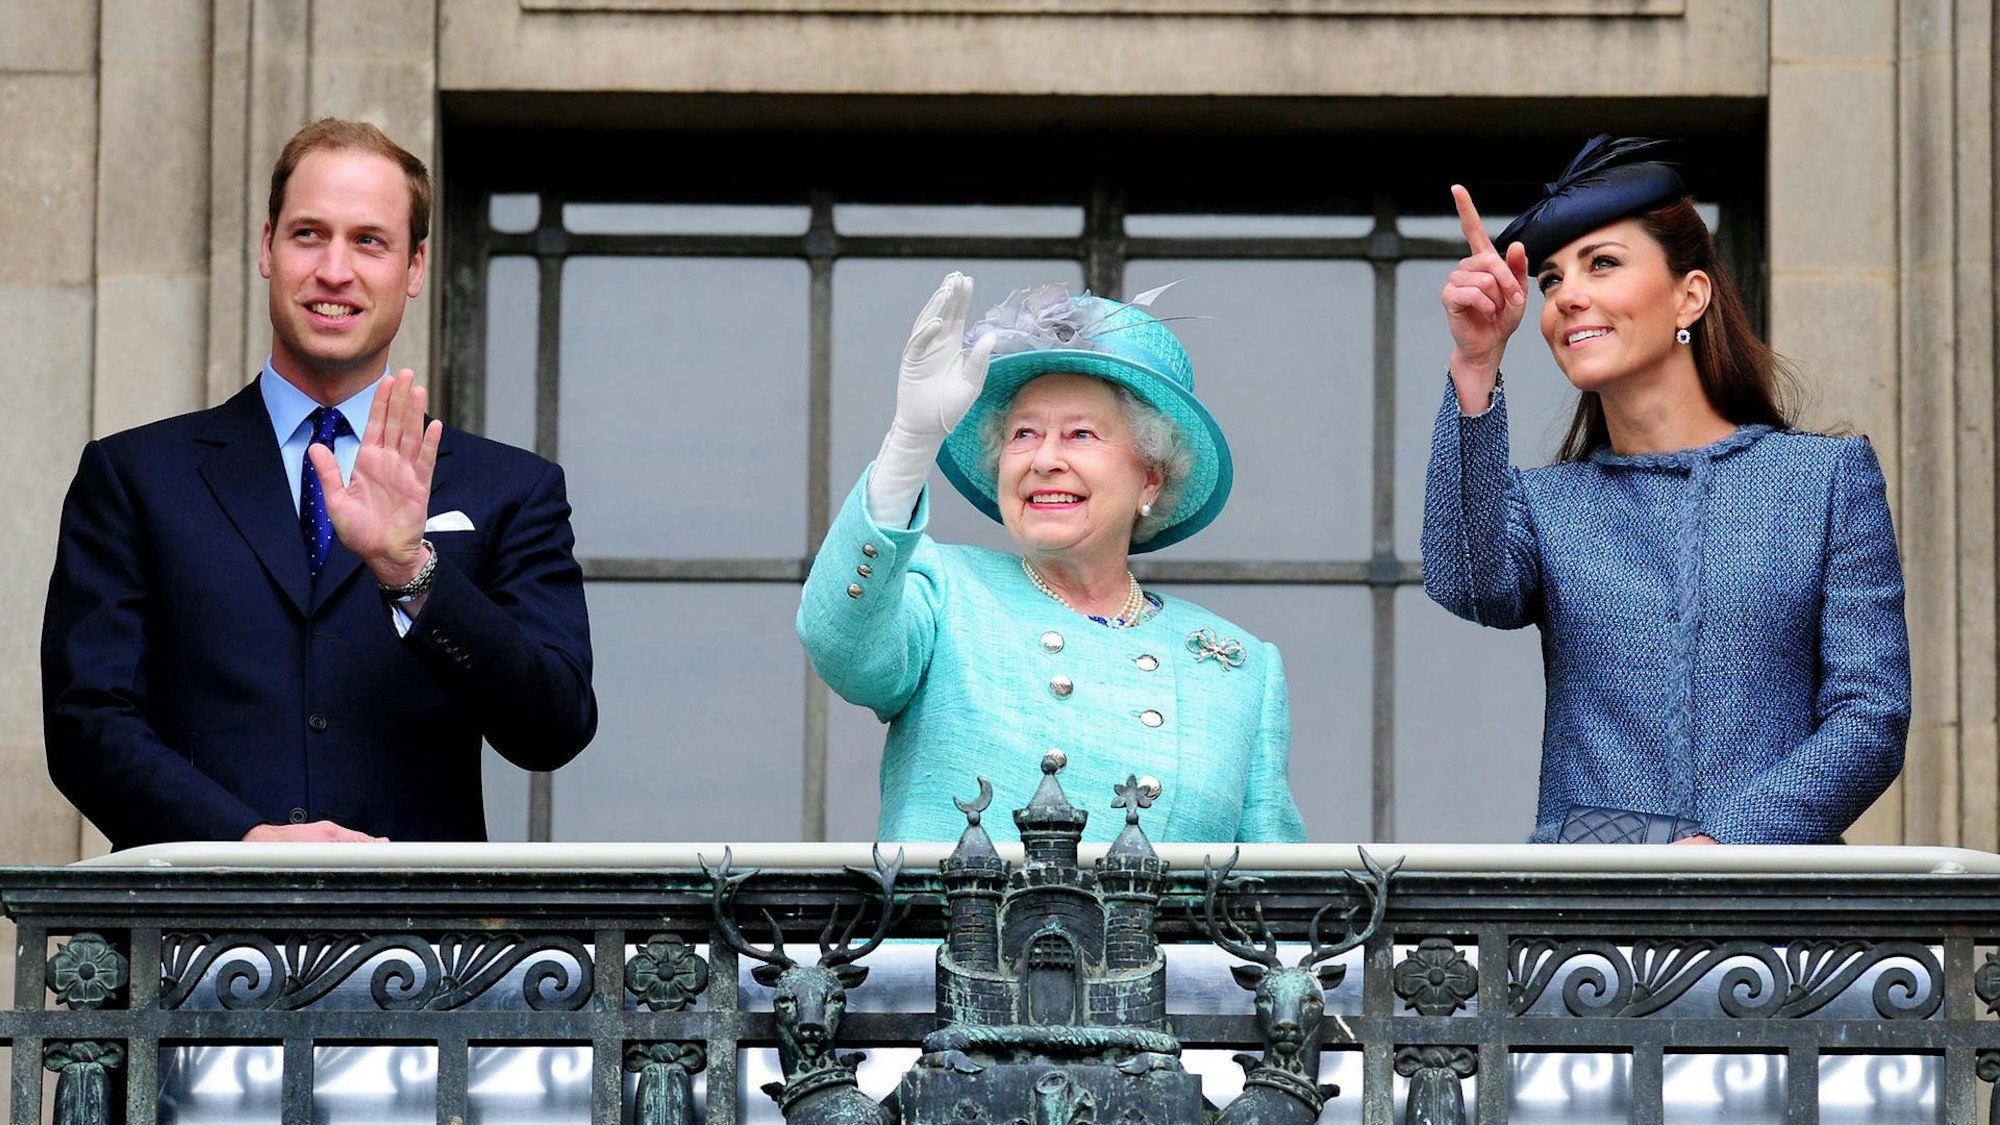 Prinz William und seine Frau Kate mit der gestorbenen Queen Elizabeth II. bei einem Auftritt in 2012.